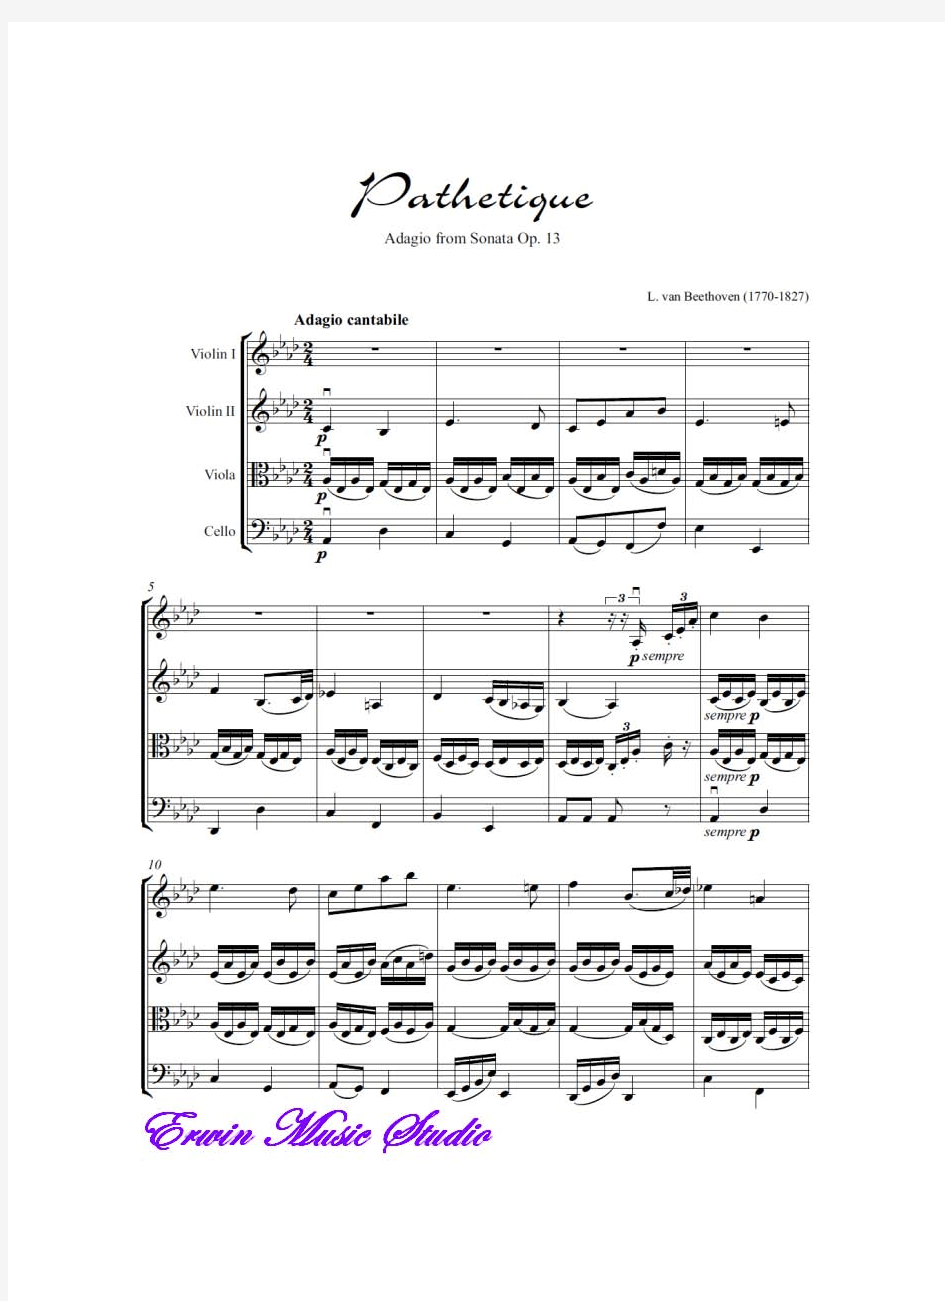 Score路德维希范贝多芬《慢板》选自悲怆奏鸣曲作品.13,弦乐四重奏总谱 分谱LudwigvanBeethoven,P